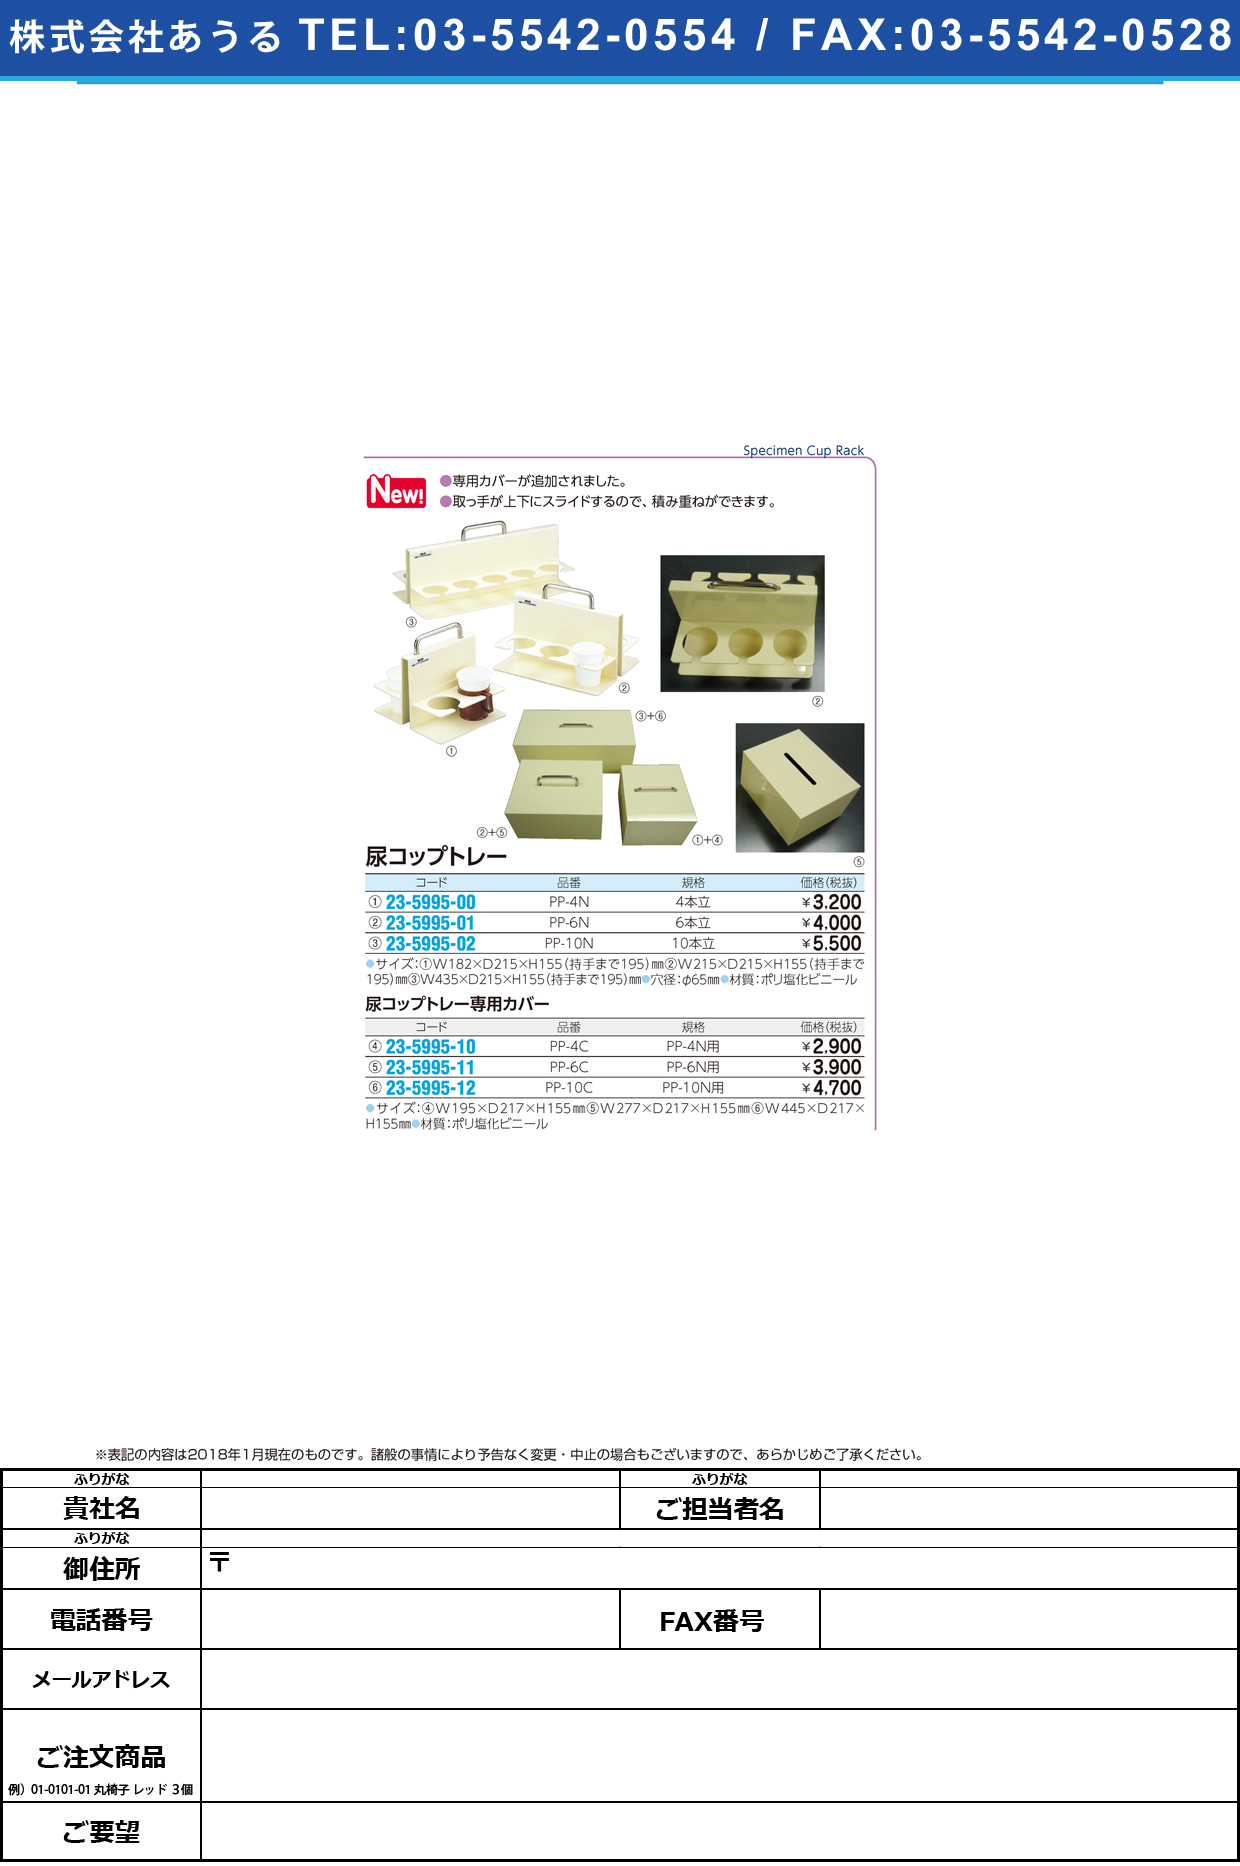 (23-5995-00)尿コップトレー（４人用） PP-4N ﾆｮｳｺｯﾌﾟﾄﾚｰ(4ﾆﾝﾖｳ)【1個単位】【2018年カタログ商品】